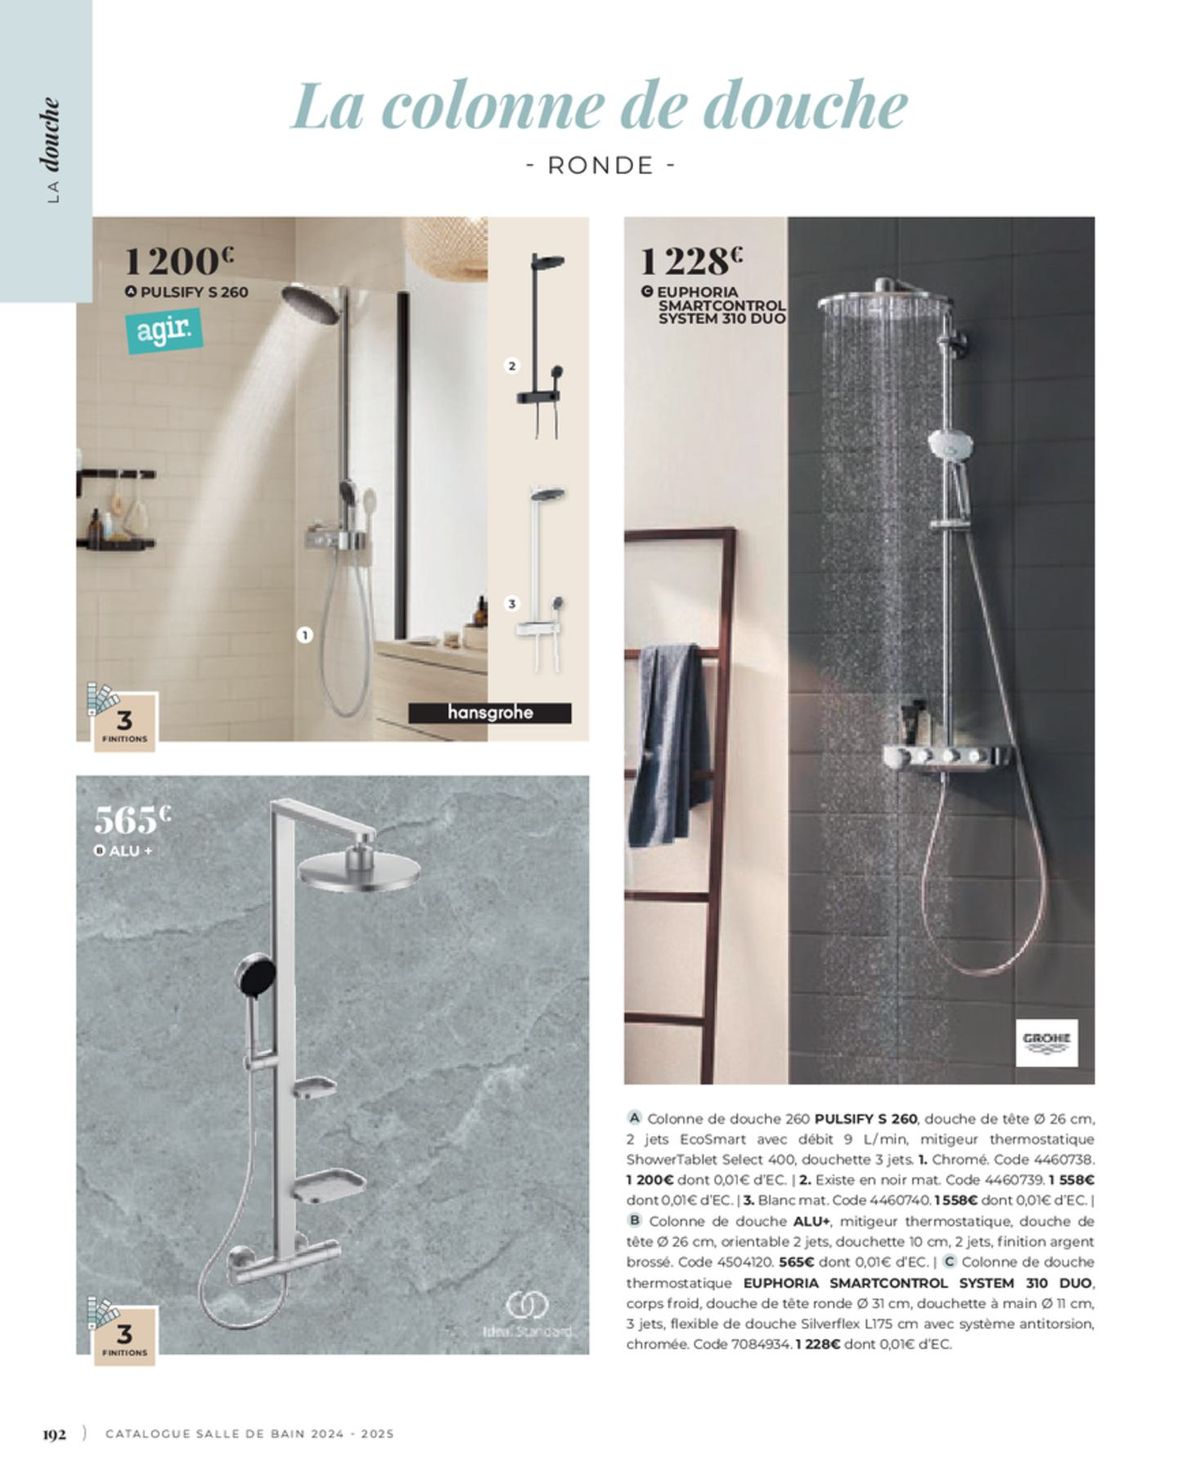 Catalogue Cedeo Salle de bain, page 00102